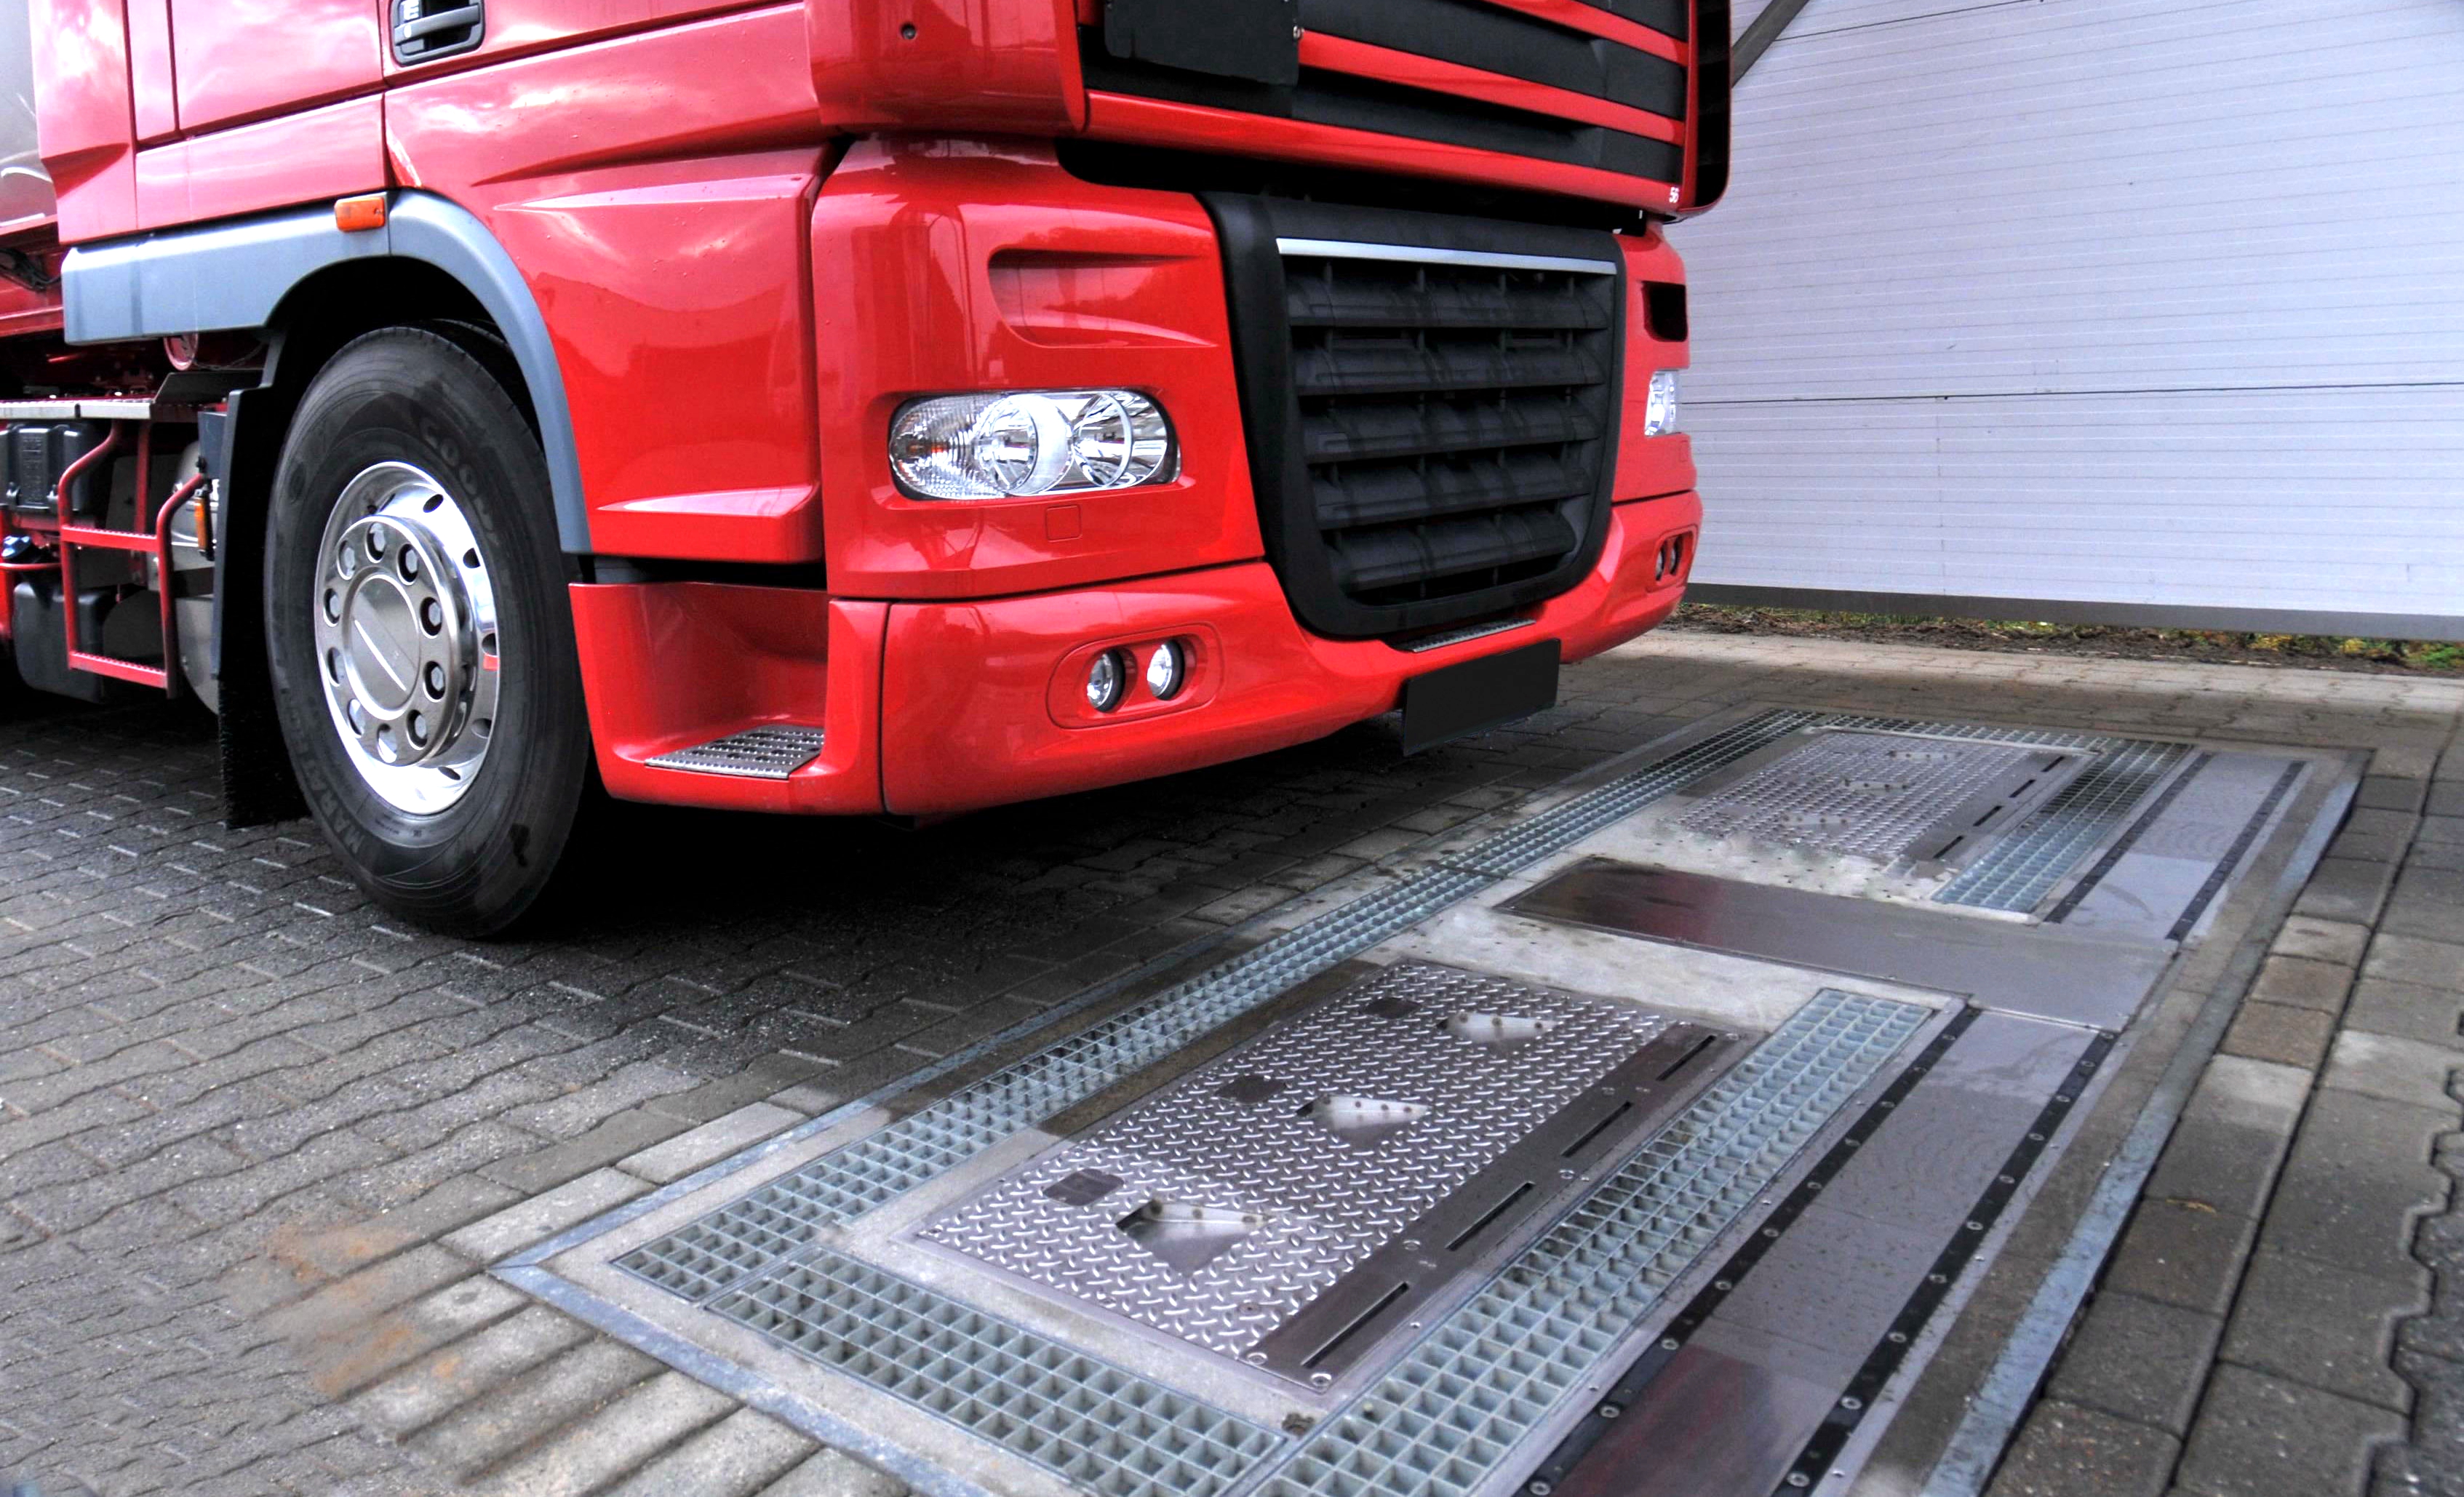 卡車即將通過由Ventech Systems GmbH所製造的全自動輪胎檢測系統，此創新裝置可快速的檢測出胎壓、溝深及車重。固特異輪胎及橡膠公司已同意自Grenzebach Maschinenbau GmbH購入Ventech Systems